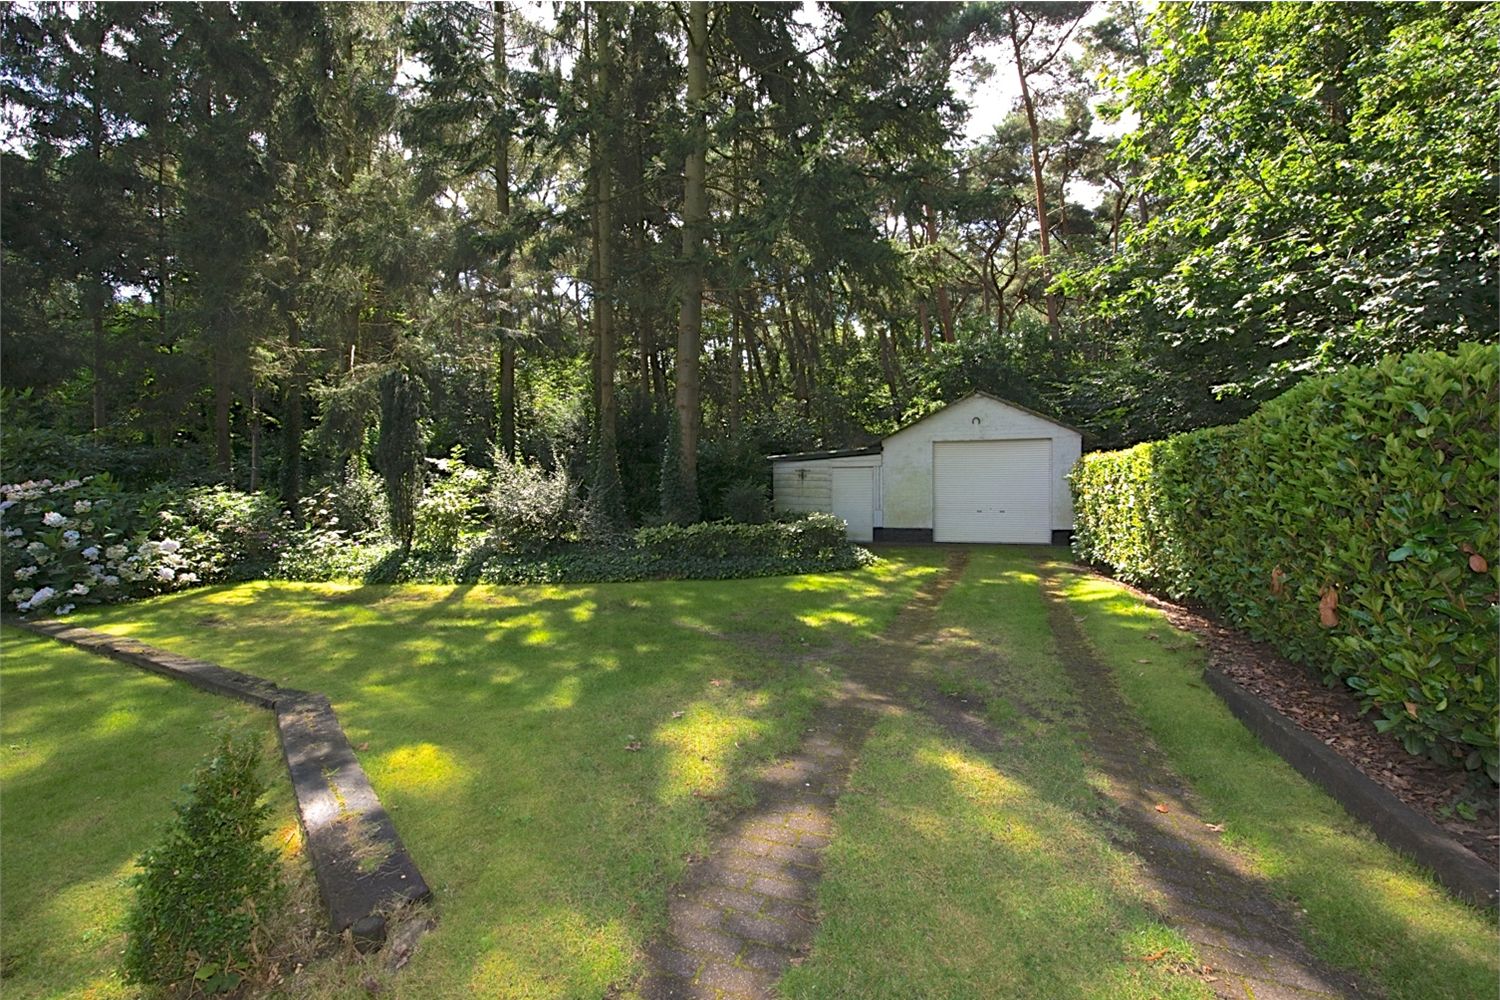 Villa verkocht in Heusden (9070)